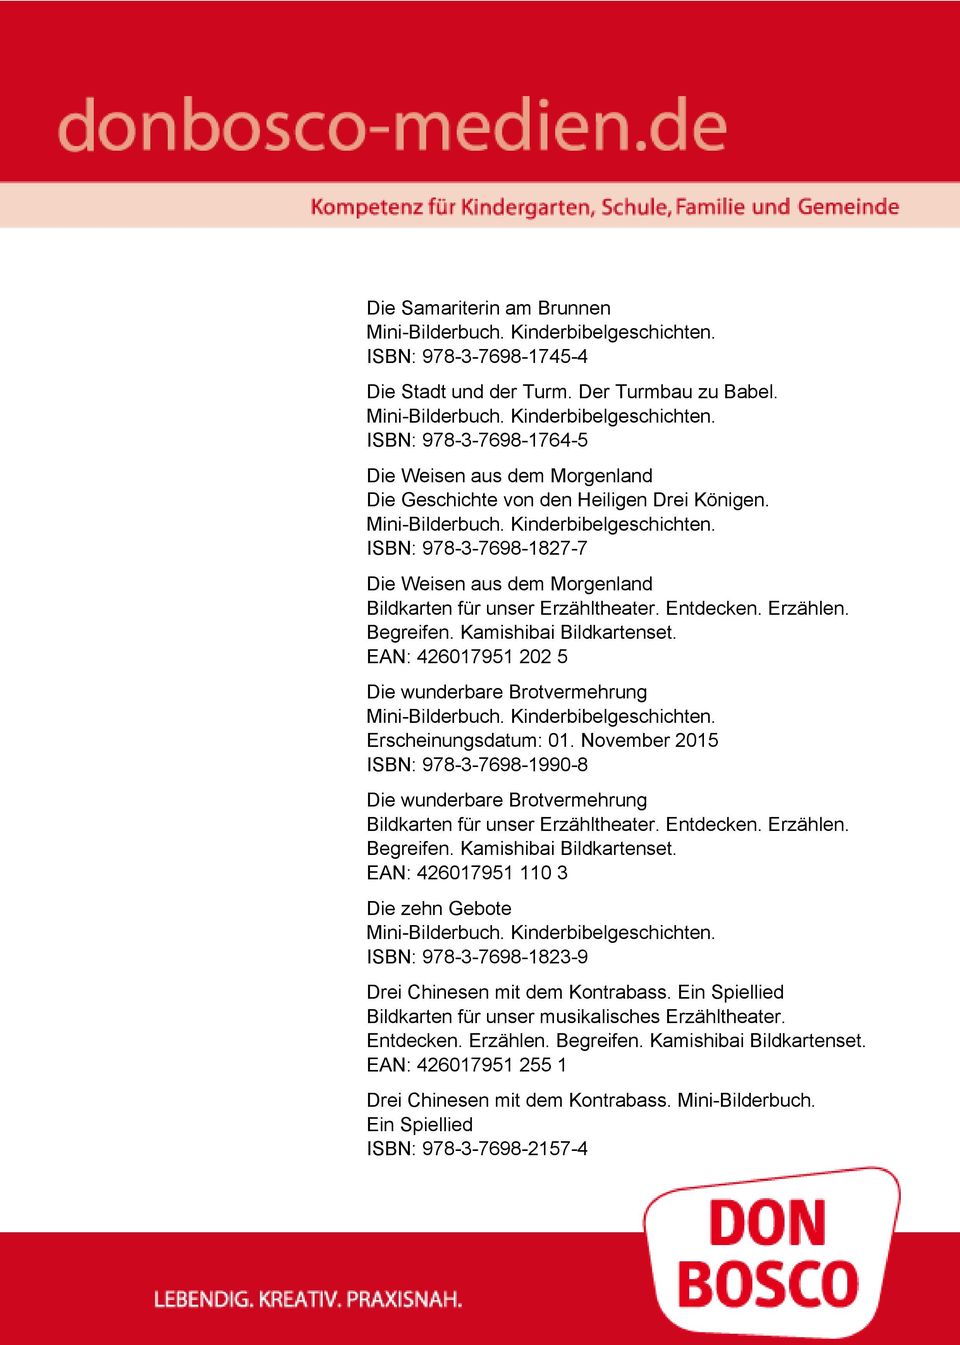 ISBN: 978-3-7698-1827-7 Die Weisen aus dem Morgenland EAN: 426017951 202 5 Die wunderbare Brotvermehrung Erscheinungsdatum: 01.